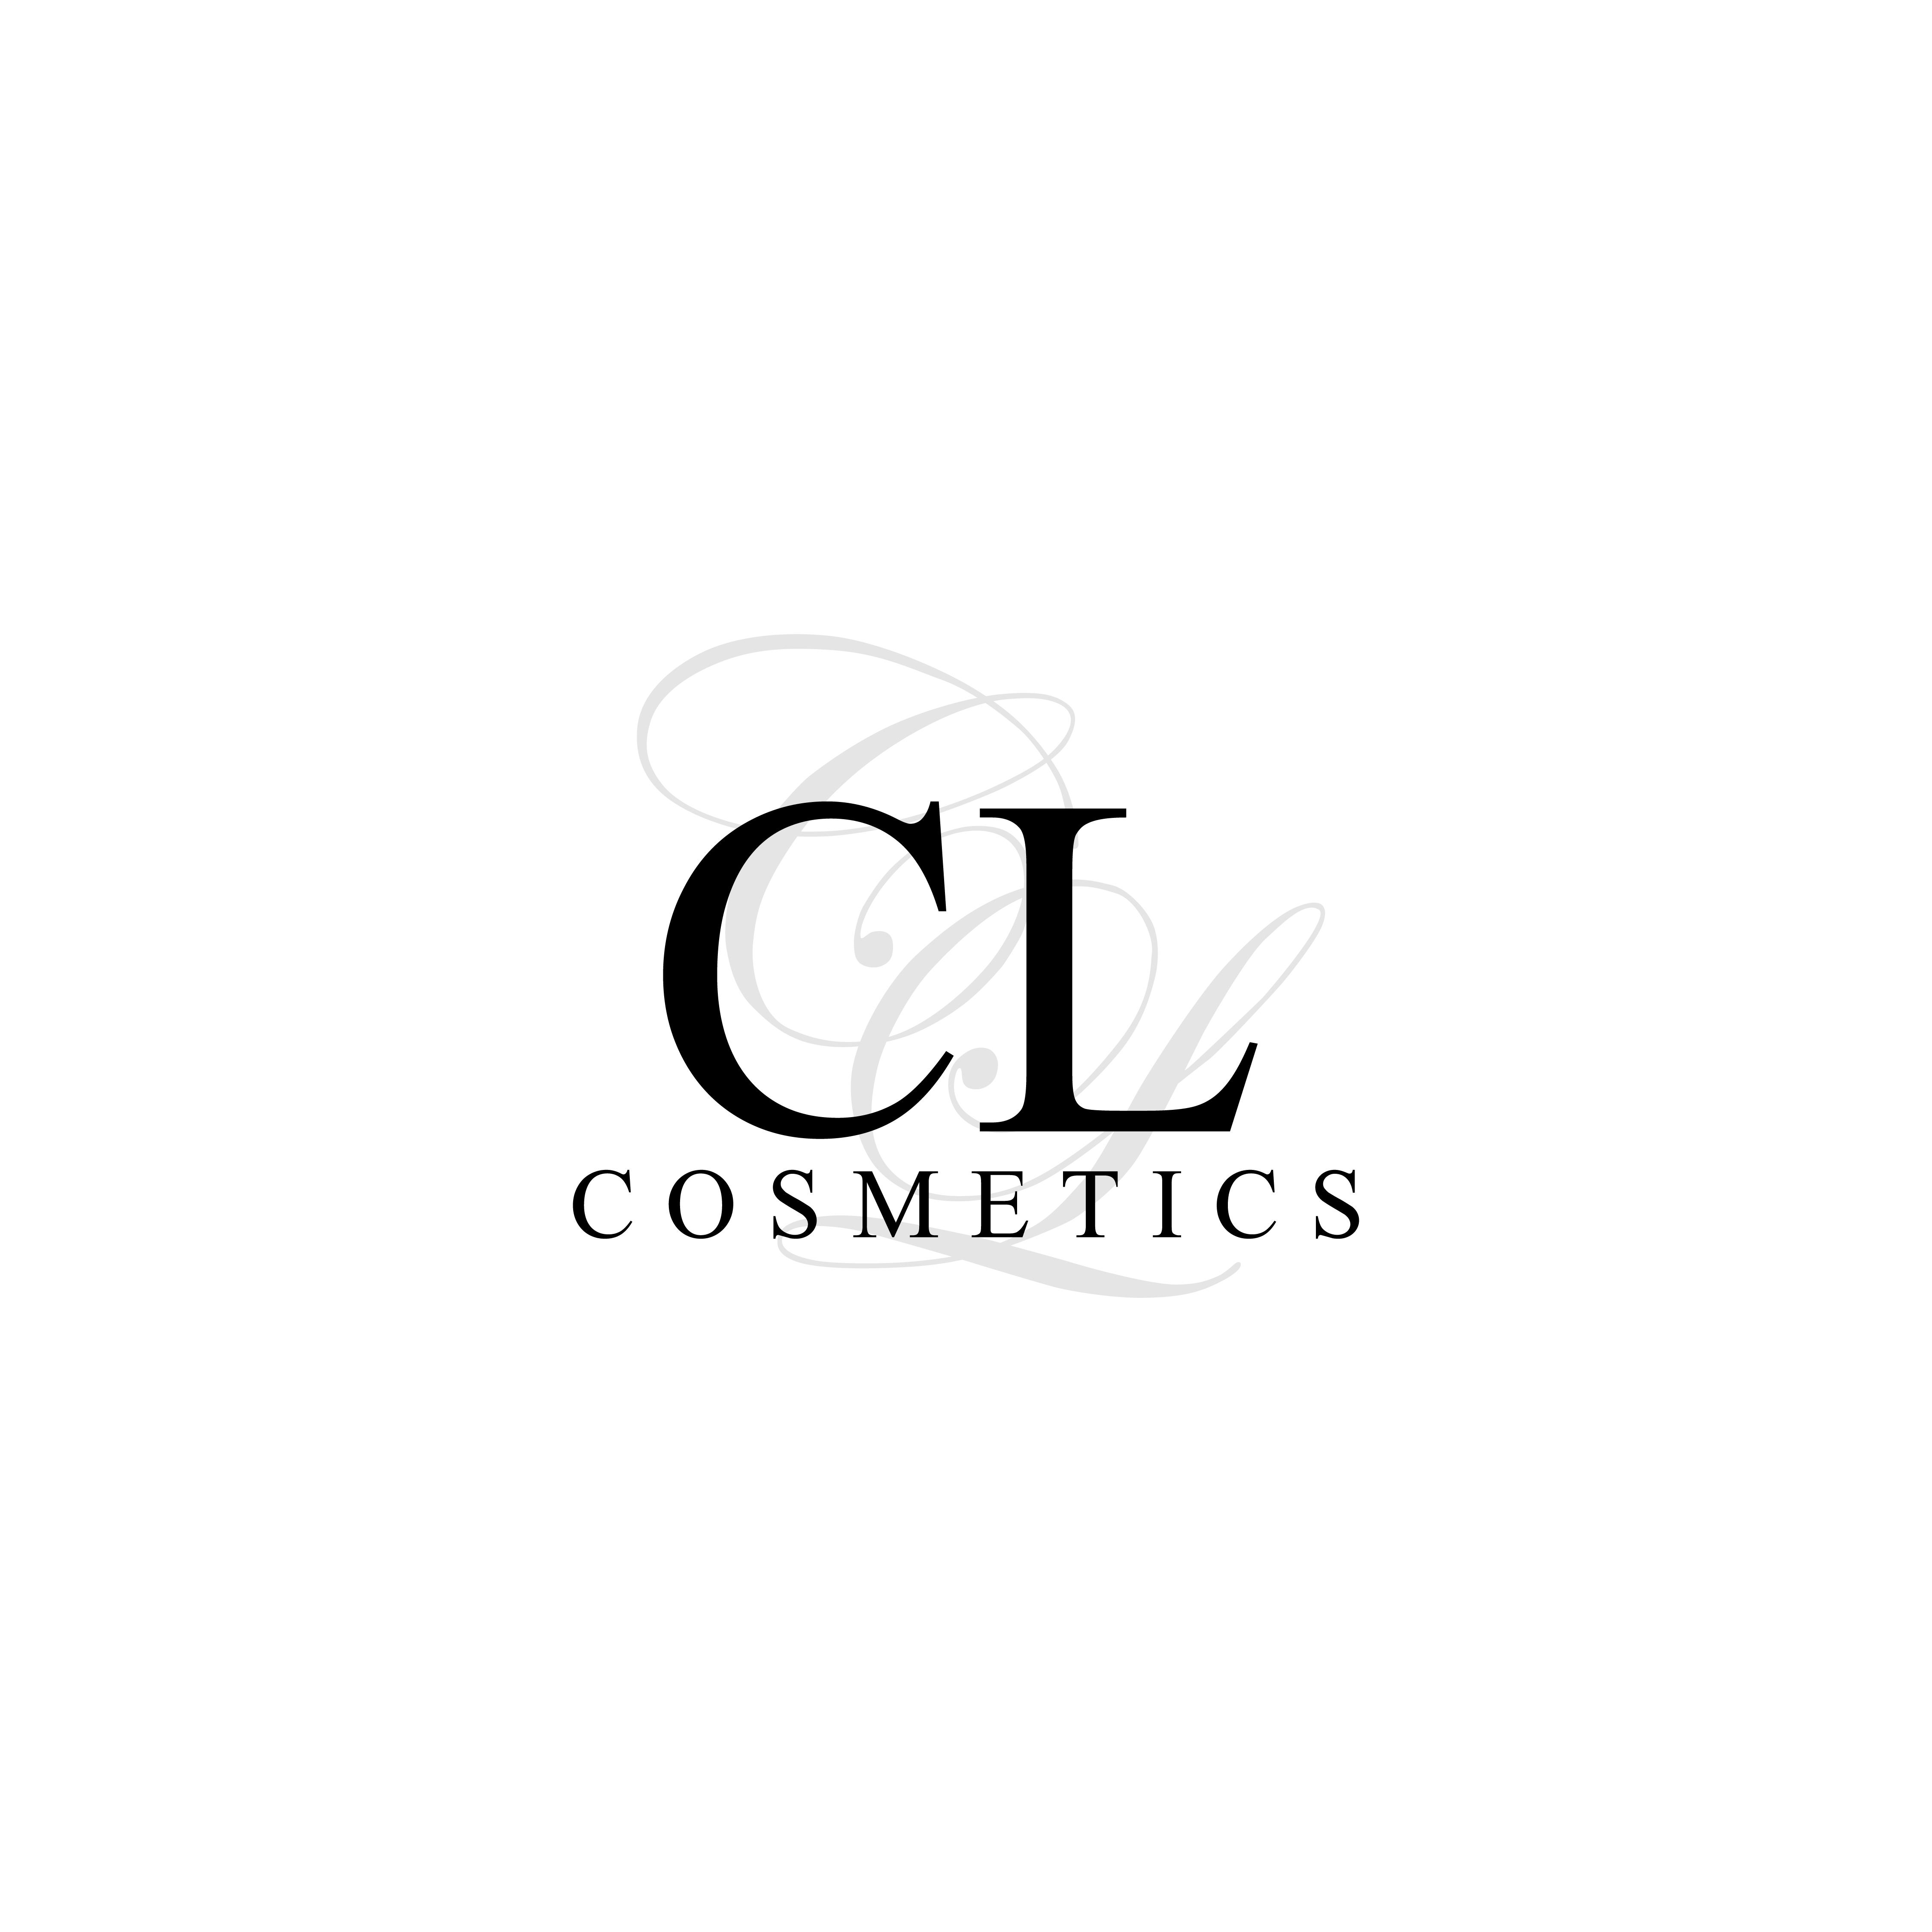 CL Cosmetics